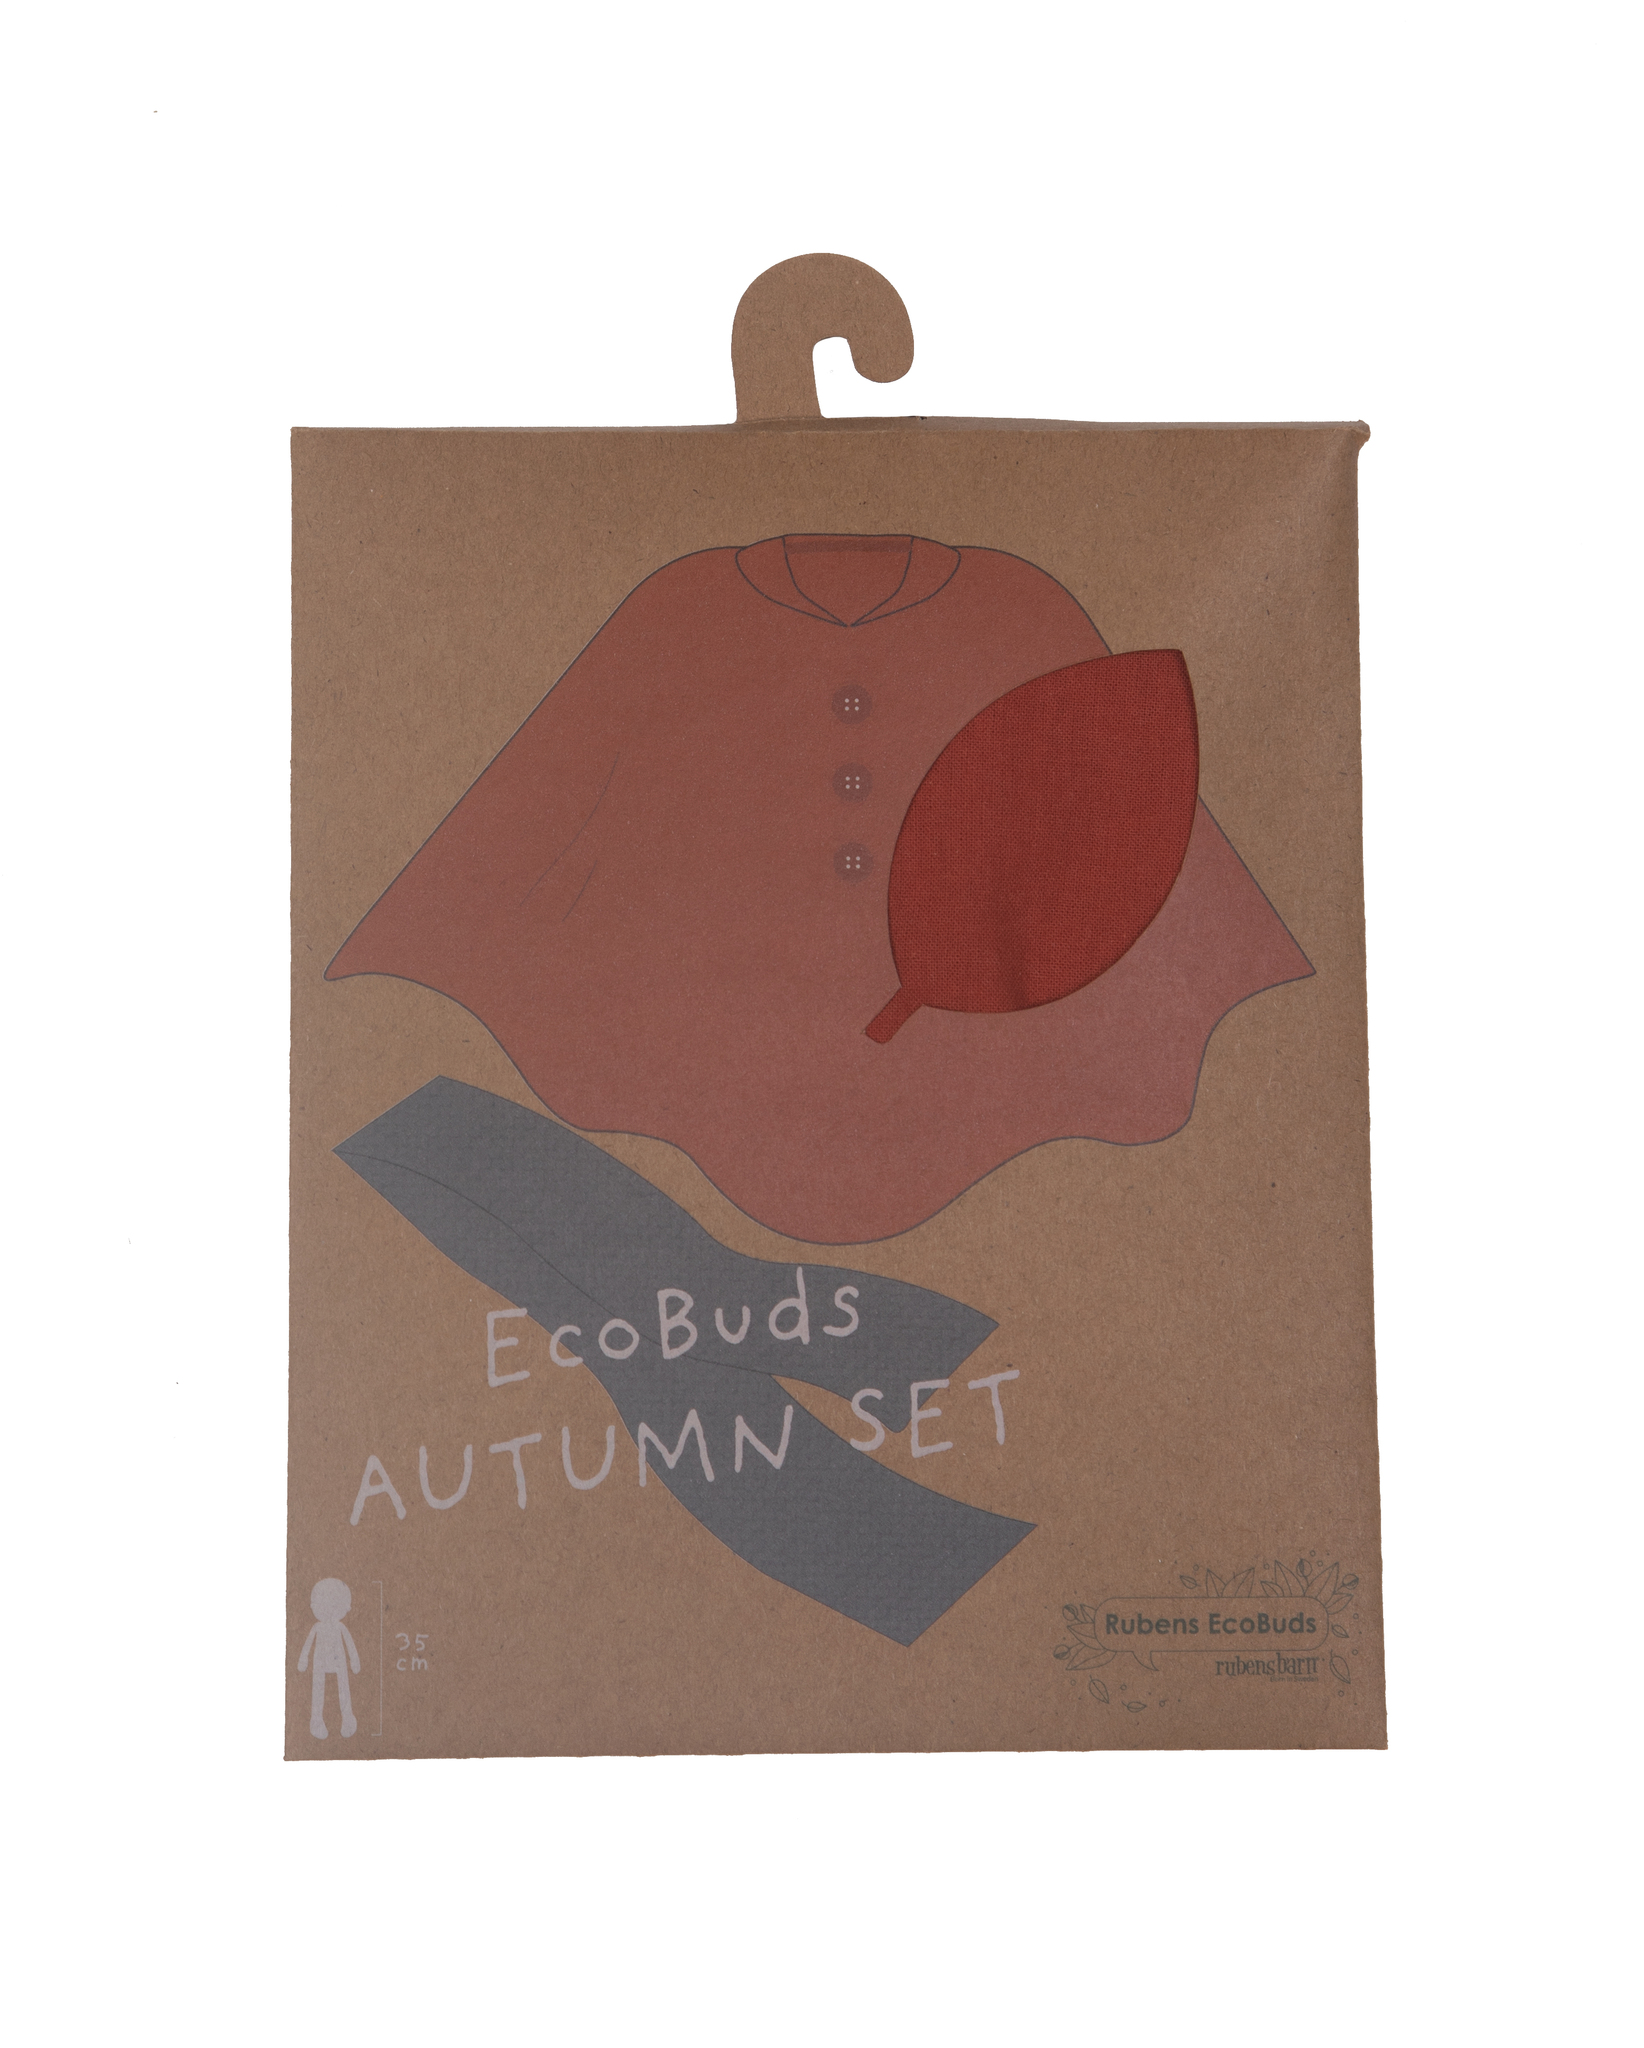 Autumn set för Ecobuds, Rubens Barn